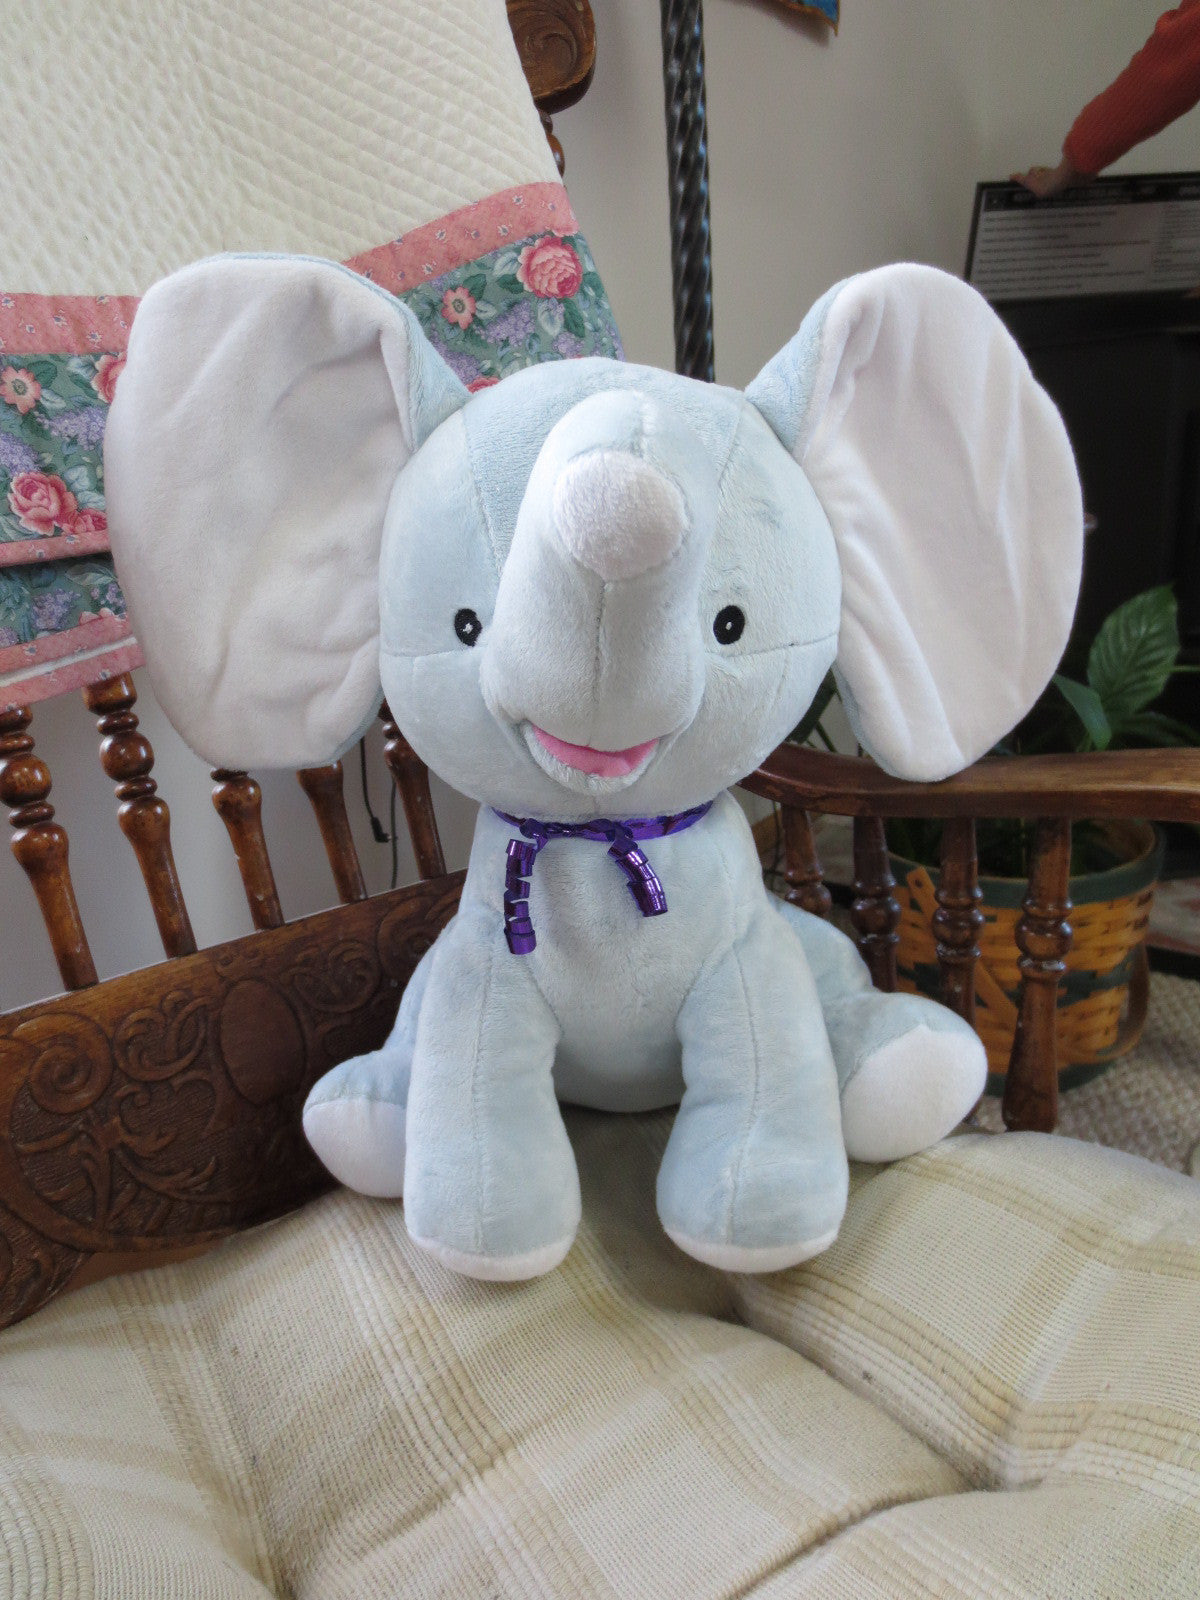 Adorable Elephant Stuffed Animal